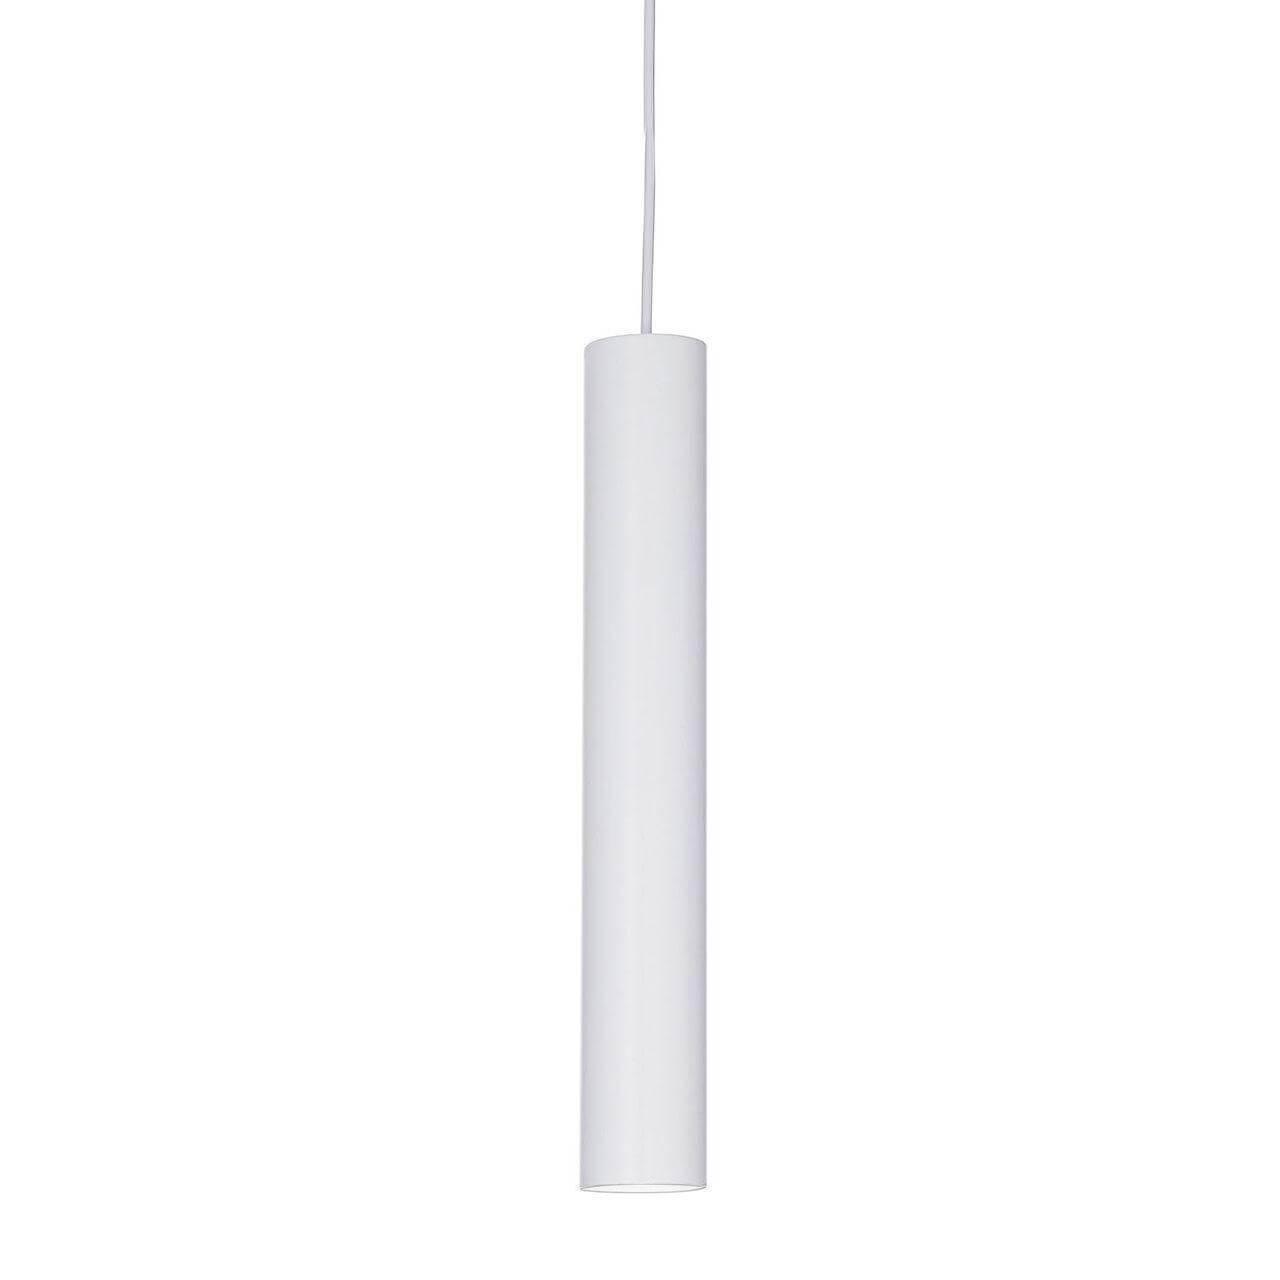 Подвесной светодиодный светильник Ideal Lux Ultrathin D040 Round Bianco 156682 светодиодный спот ideal lux goose ap bianco 142708